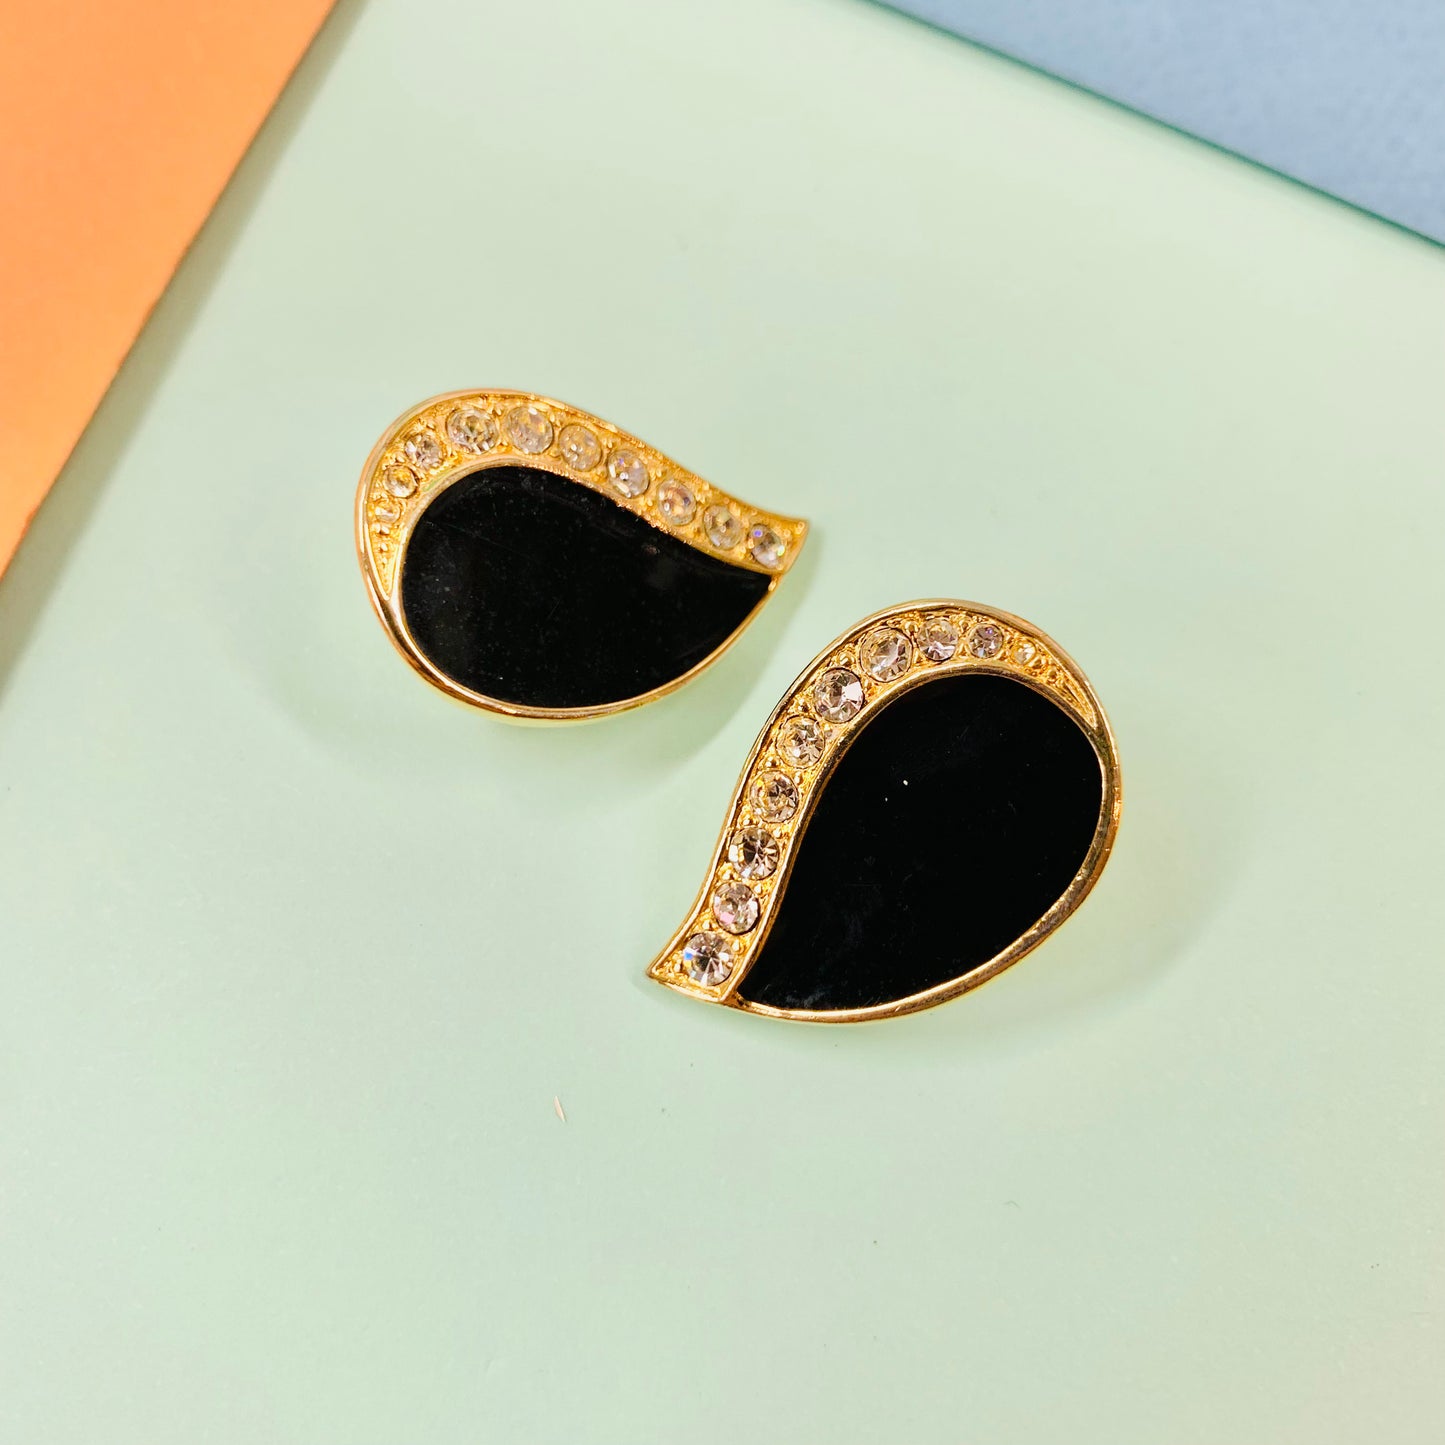 Rare 1960s gold plated tear drop black enamel stud earrings